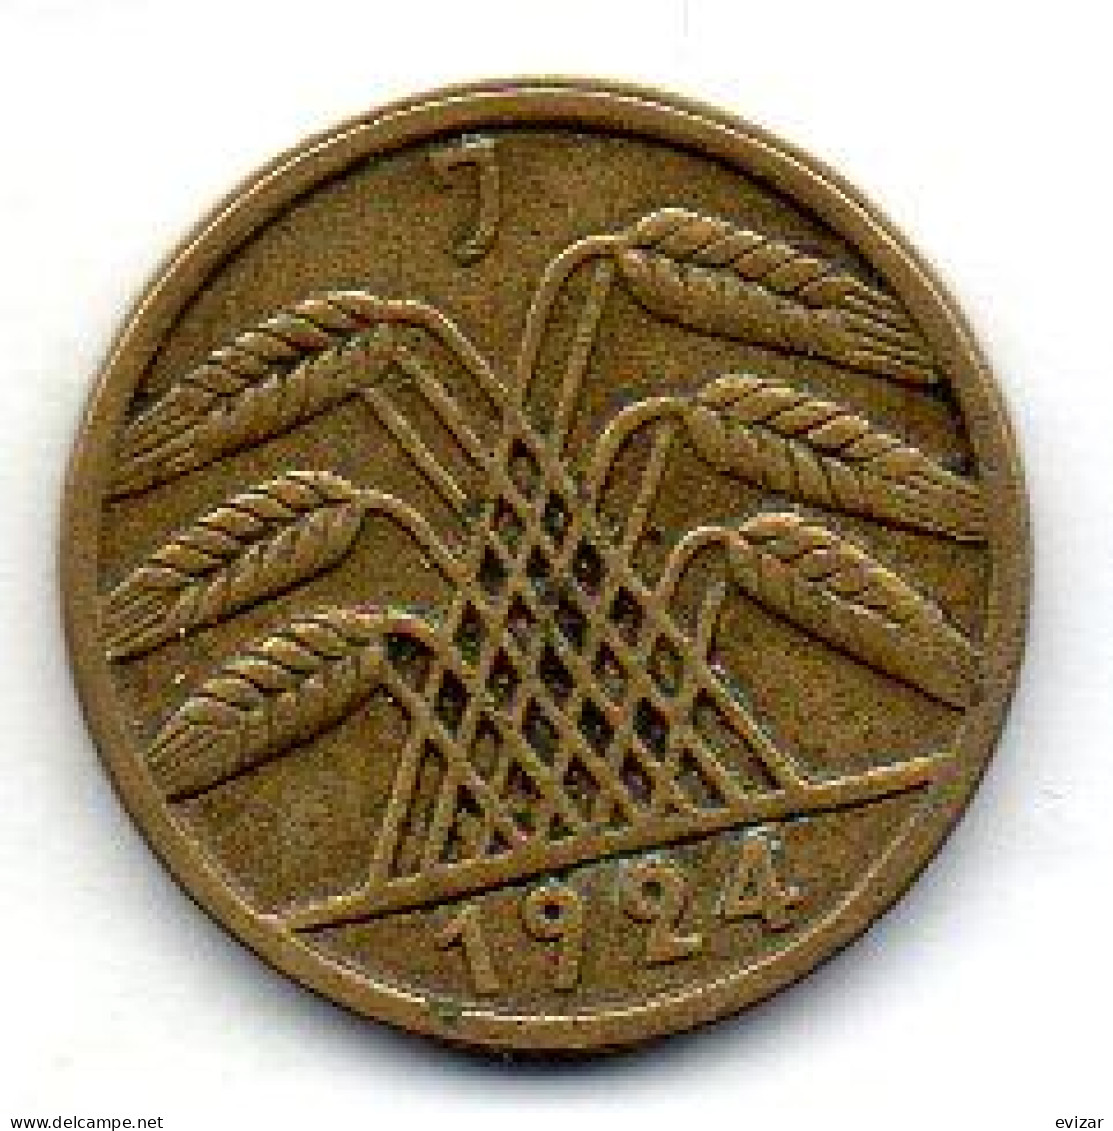 GERMANY - WEIMAR REPUBLIC, 5 Reichs Pfennig, Aluminum-Bronze, Year 1924-J, KM # 39 - 5 Rentenpfennig & 5 Reichspfennig